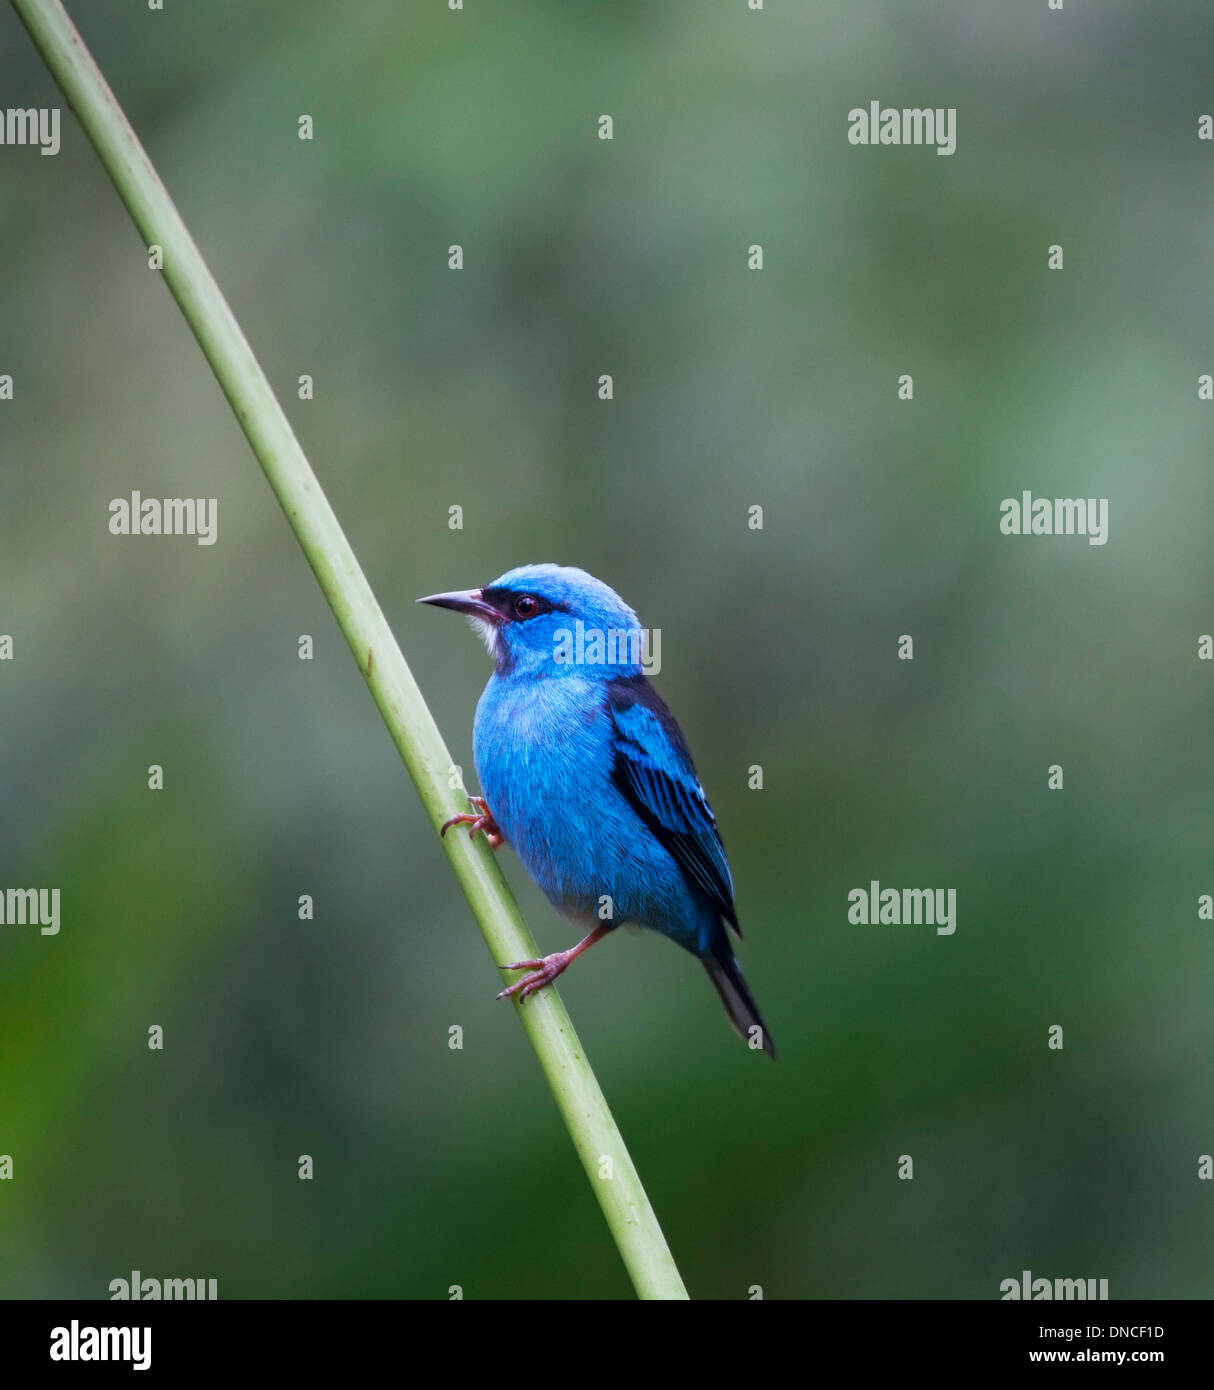 Blauer Dacnis (Dacnis cayana) männlicher Vogel auf einem Ast in Costa Rica. Auch bekannt als türkisfarbener Honigkriecher. Stockfoto